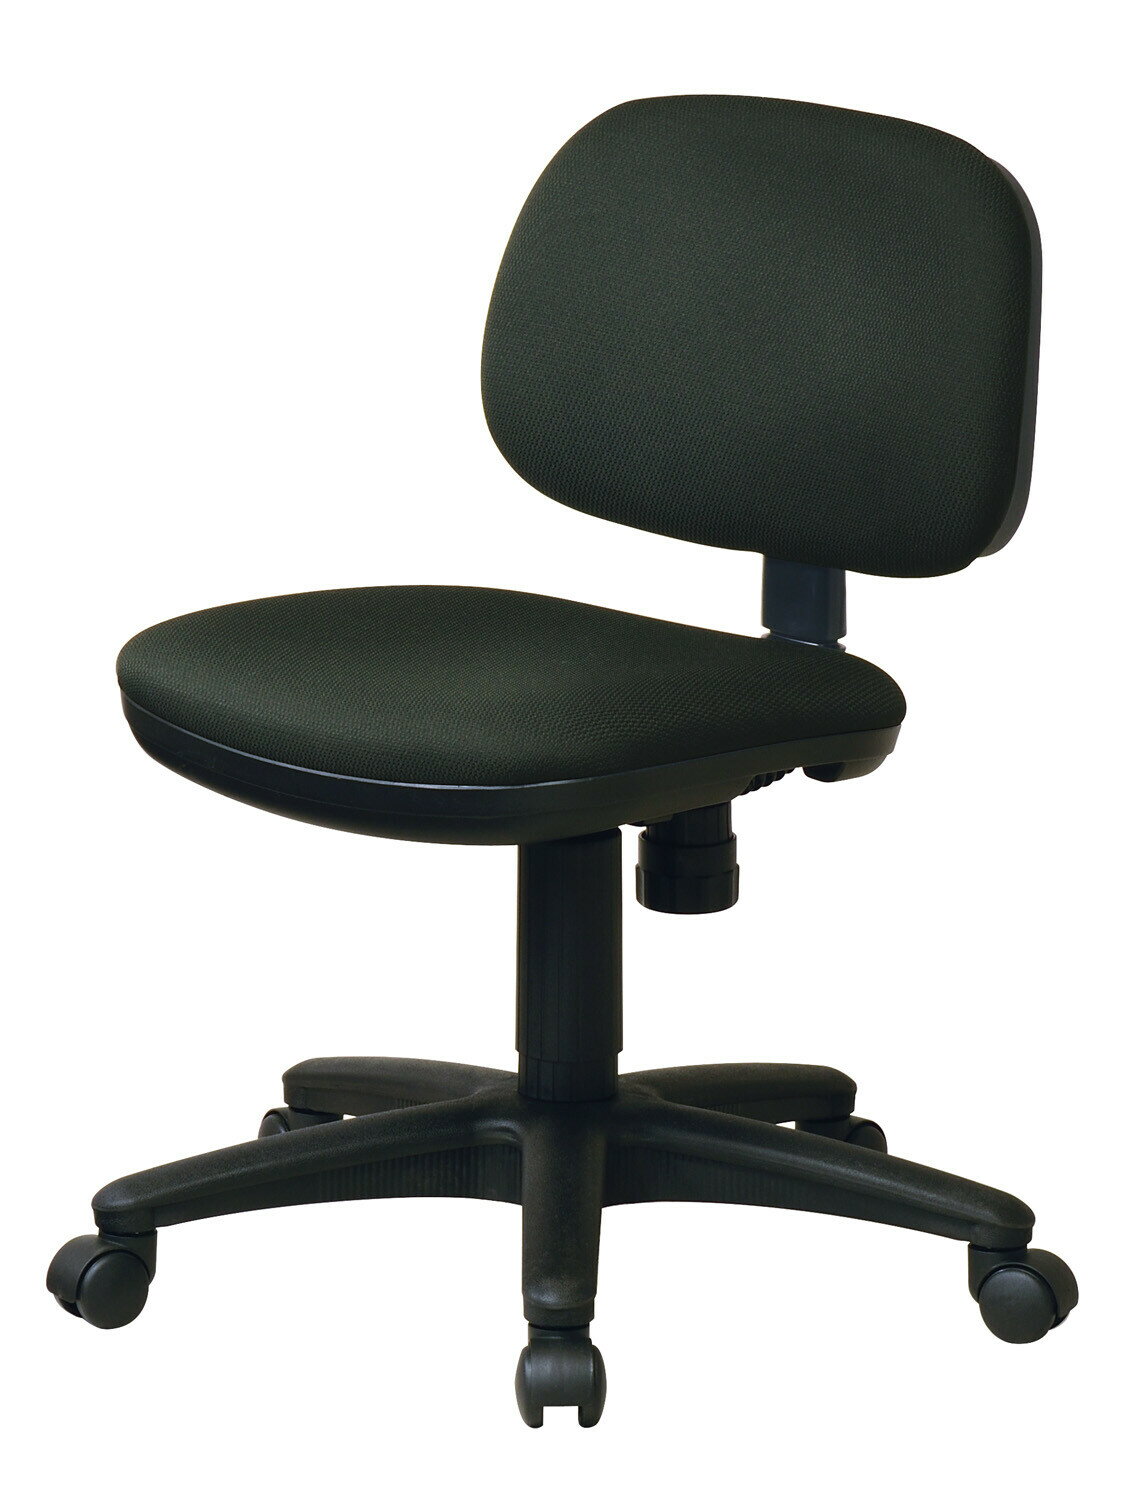 オフィスチェア モールドウレタン座面 K928 デスク用チェア キャスター付き シンプル ワークチェアー 椅子 いす 昇降 ロッキング おしゃれ 布張り事務椅子